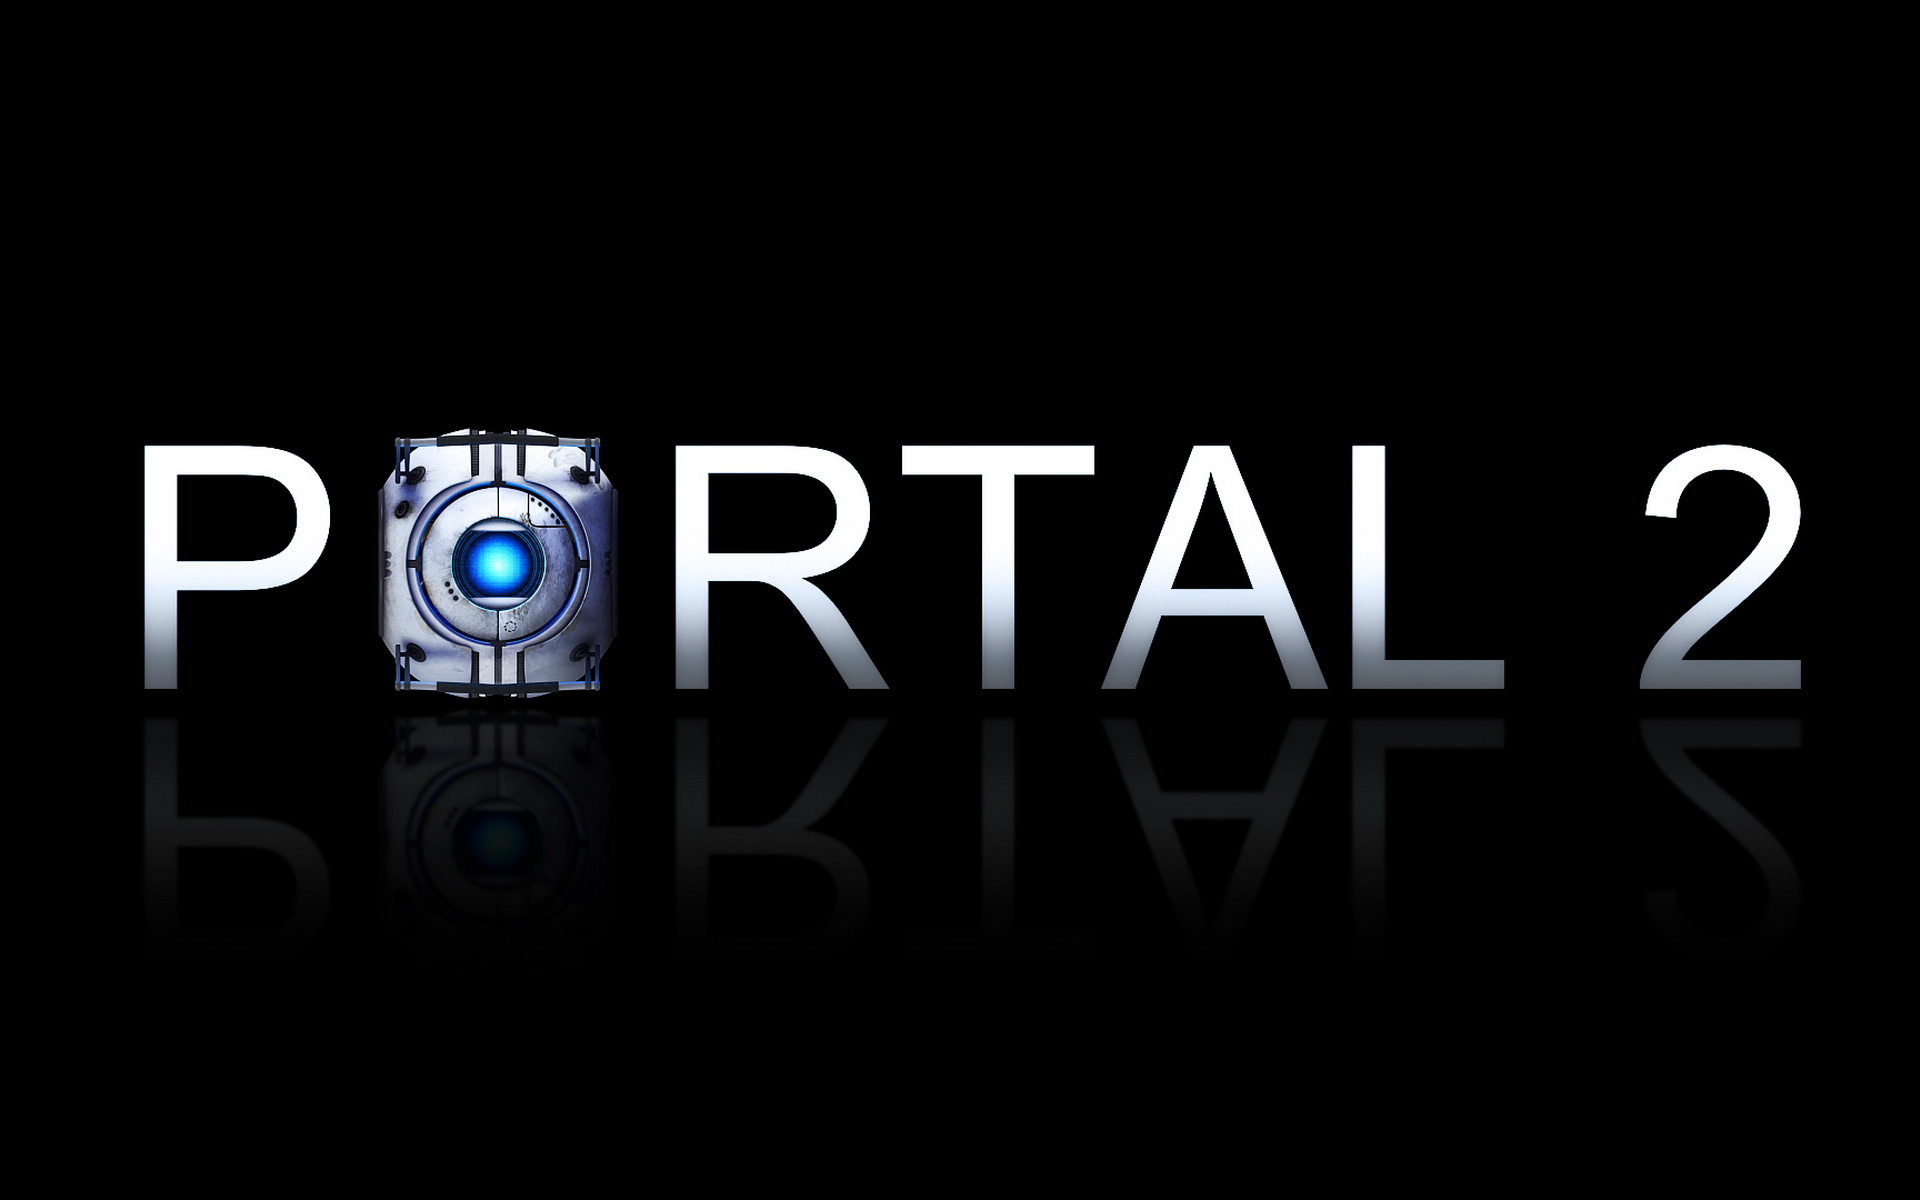 Portal desktop. Портал 2. Портал 2 обложка. Портал 2 картинки на рабочий стол. Портал 2 логотип.